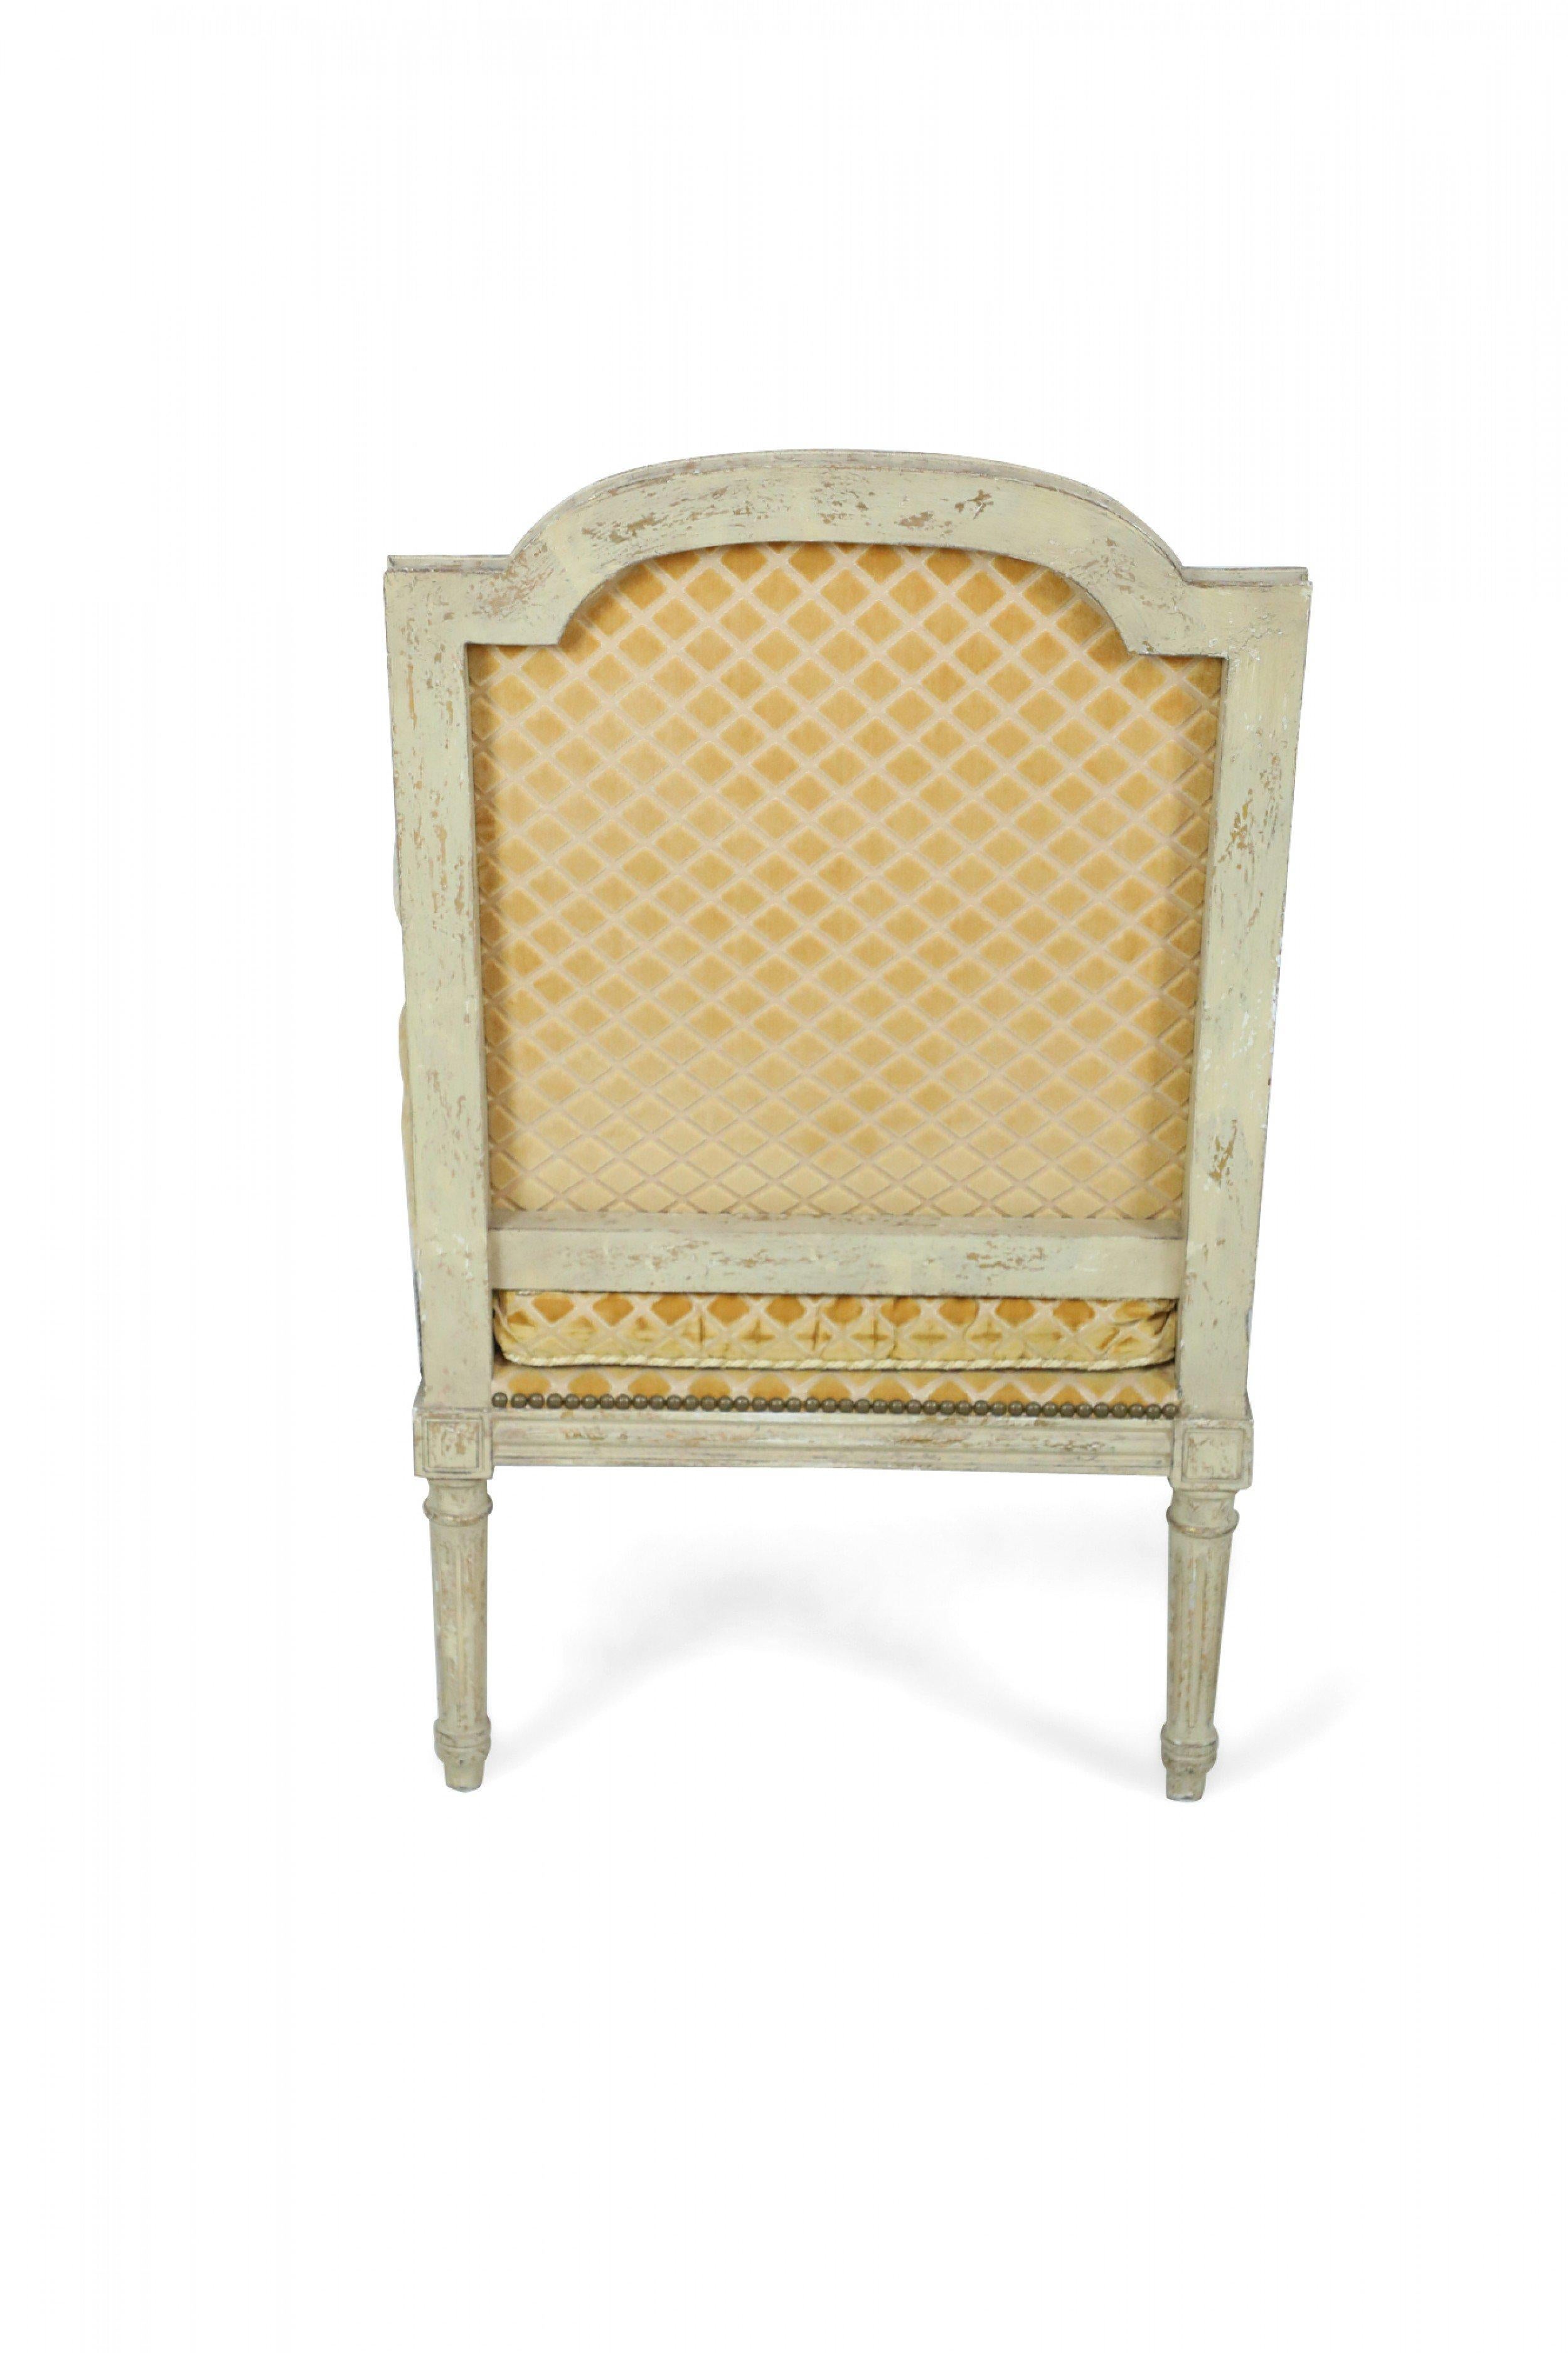 Paar Fauteuils / Sessel im Louis XVI-Stil (19./20. Jahrhundert) mit grau lackierten Rahmen auf gedrechselten, kannelierten Beinen und einer goldenen, rautenförmigen Polsterung auf Sitzen, Rückenlehnen und Armlehnen mit dekorativen Metallnagelköpfen